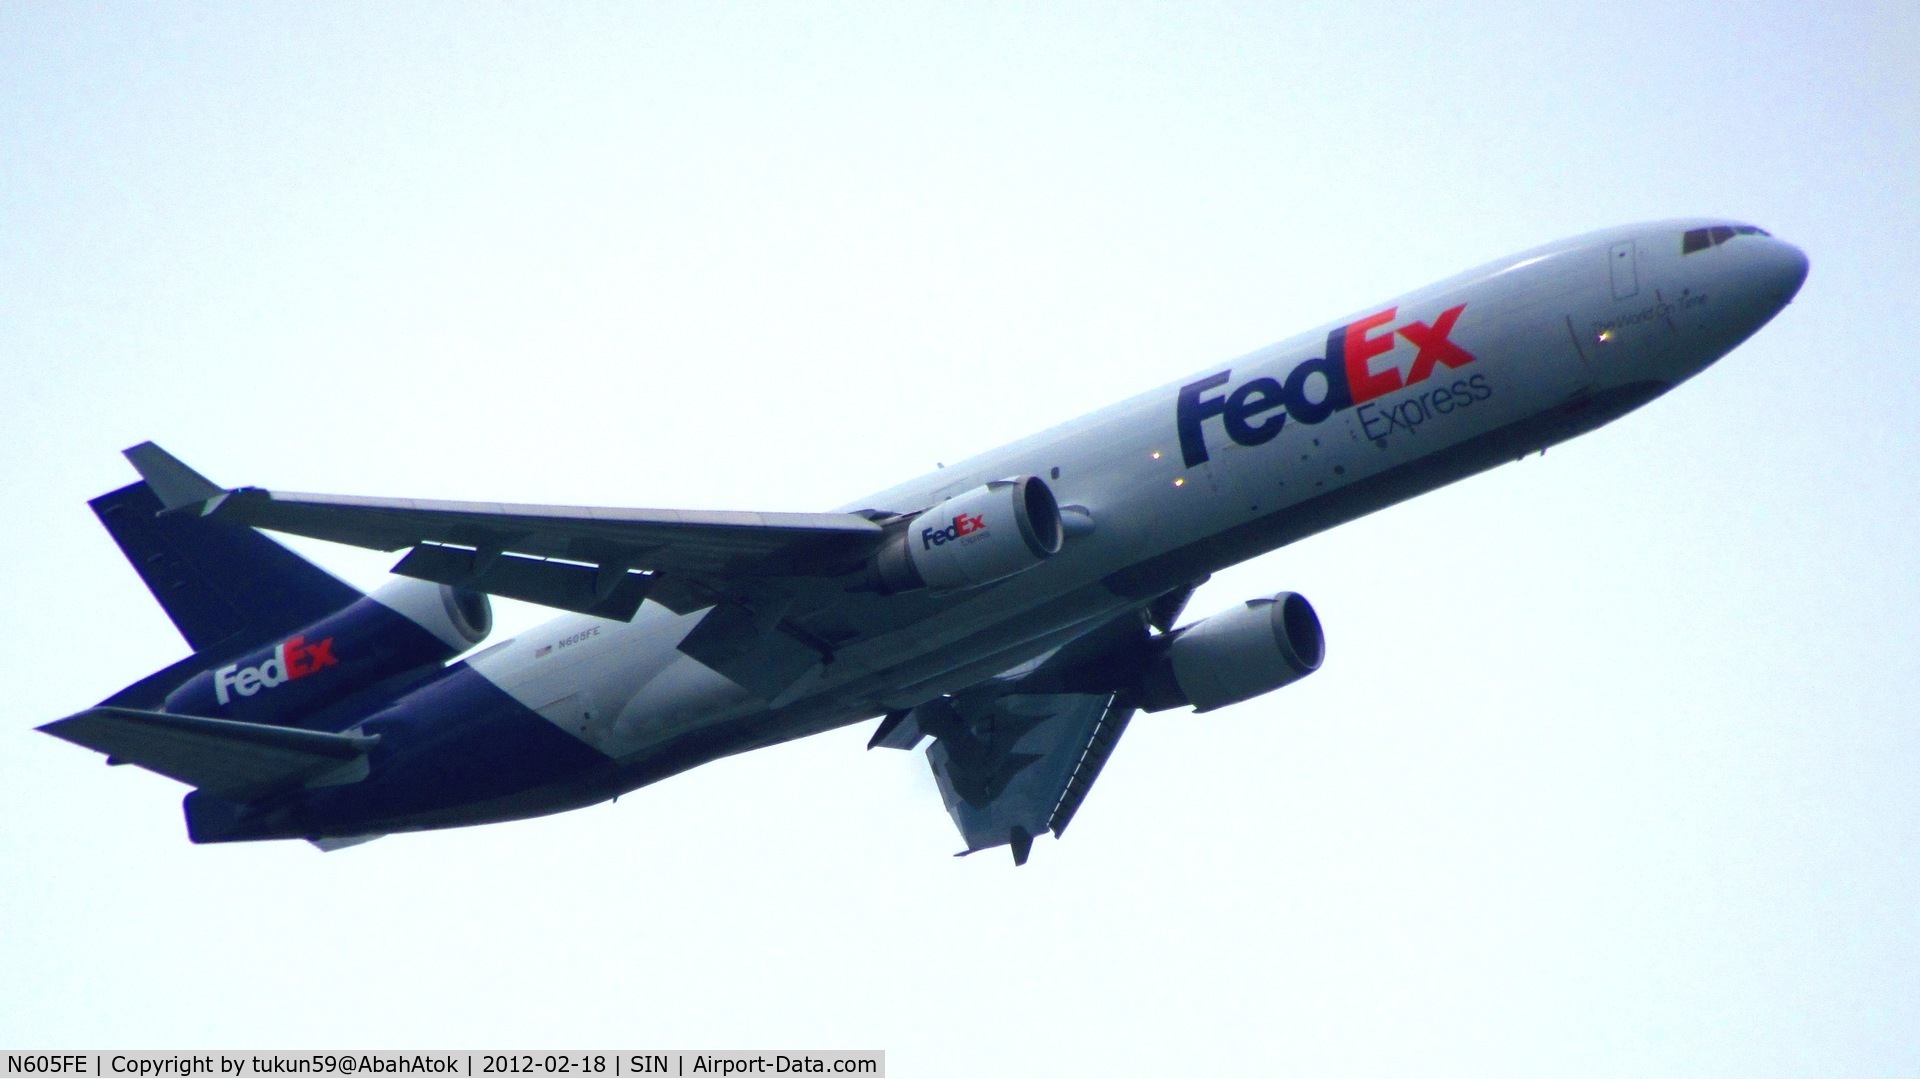 N605FE, 1992 McDonnell Douglas MD-11F C/N 48514, FedEx Express